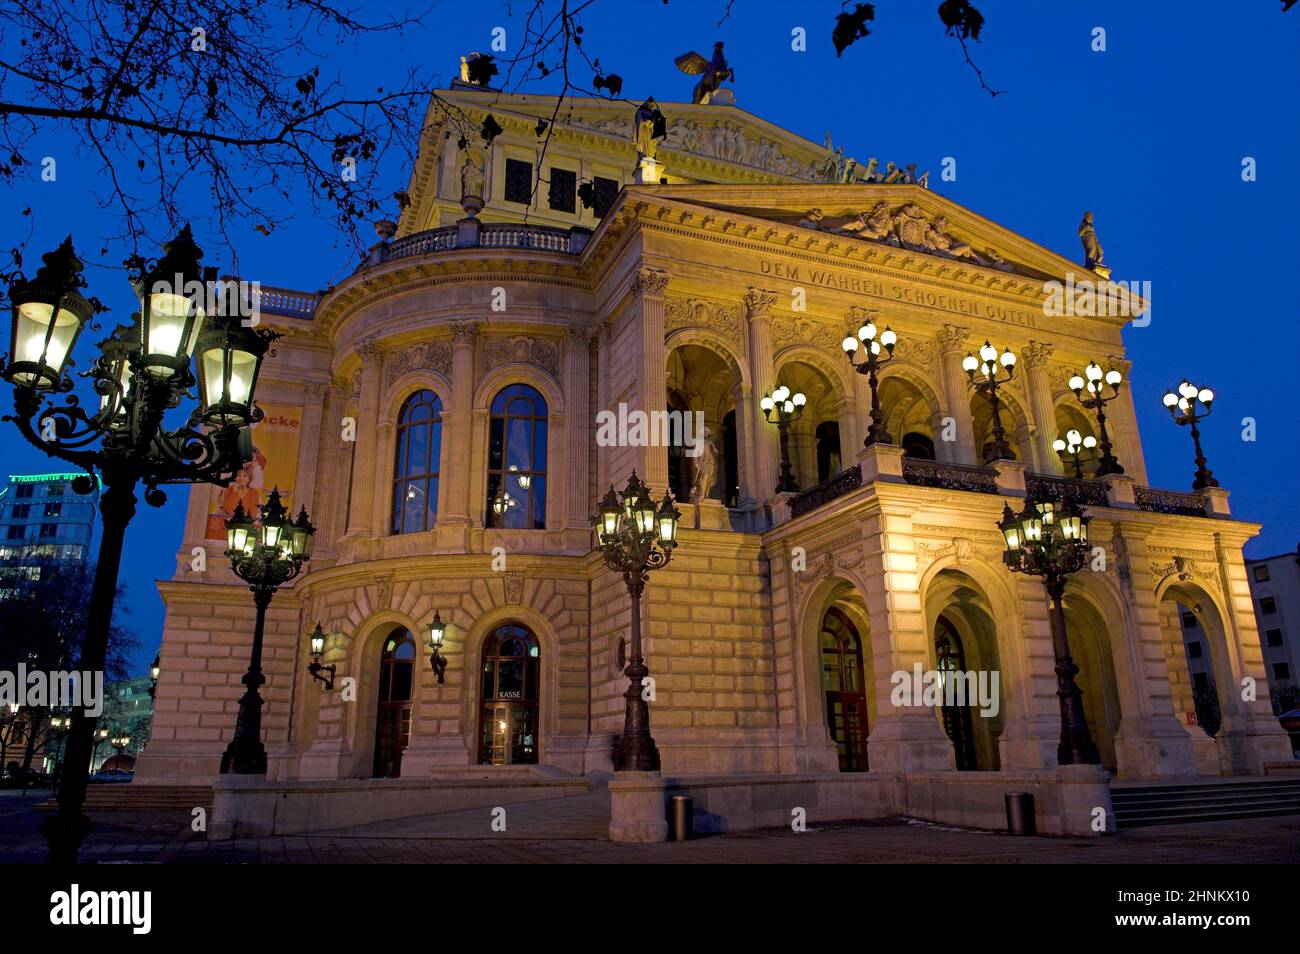 Die Alte Oper in Frankfurt am Main am Abend bei künstlicher Beleuchtung Stock Photo